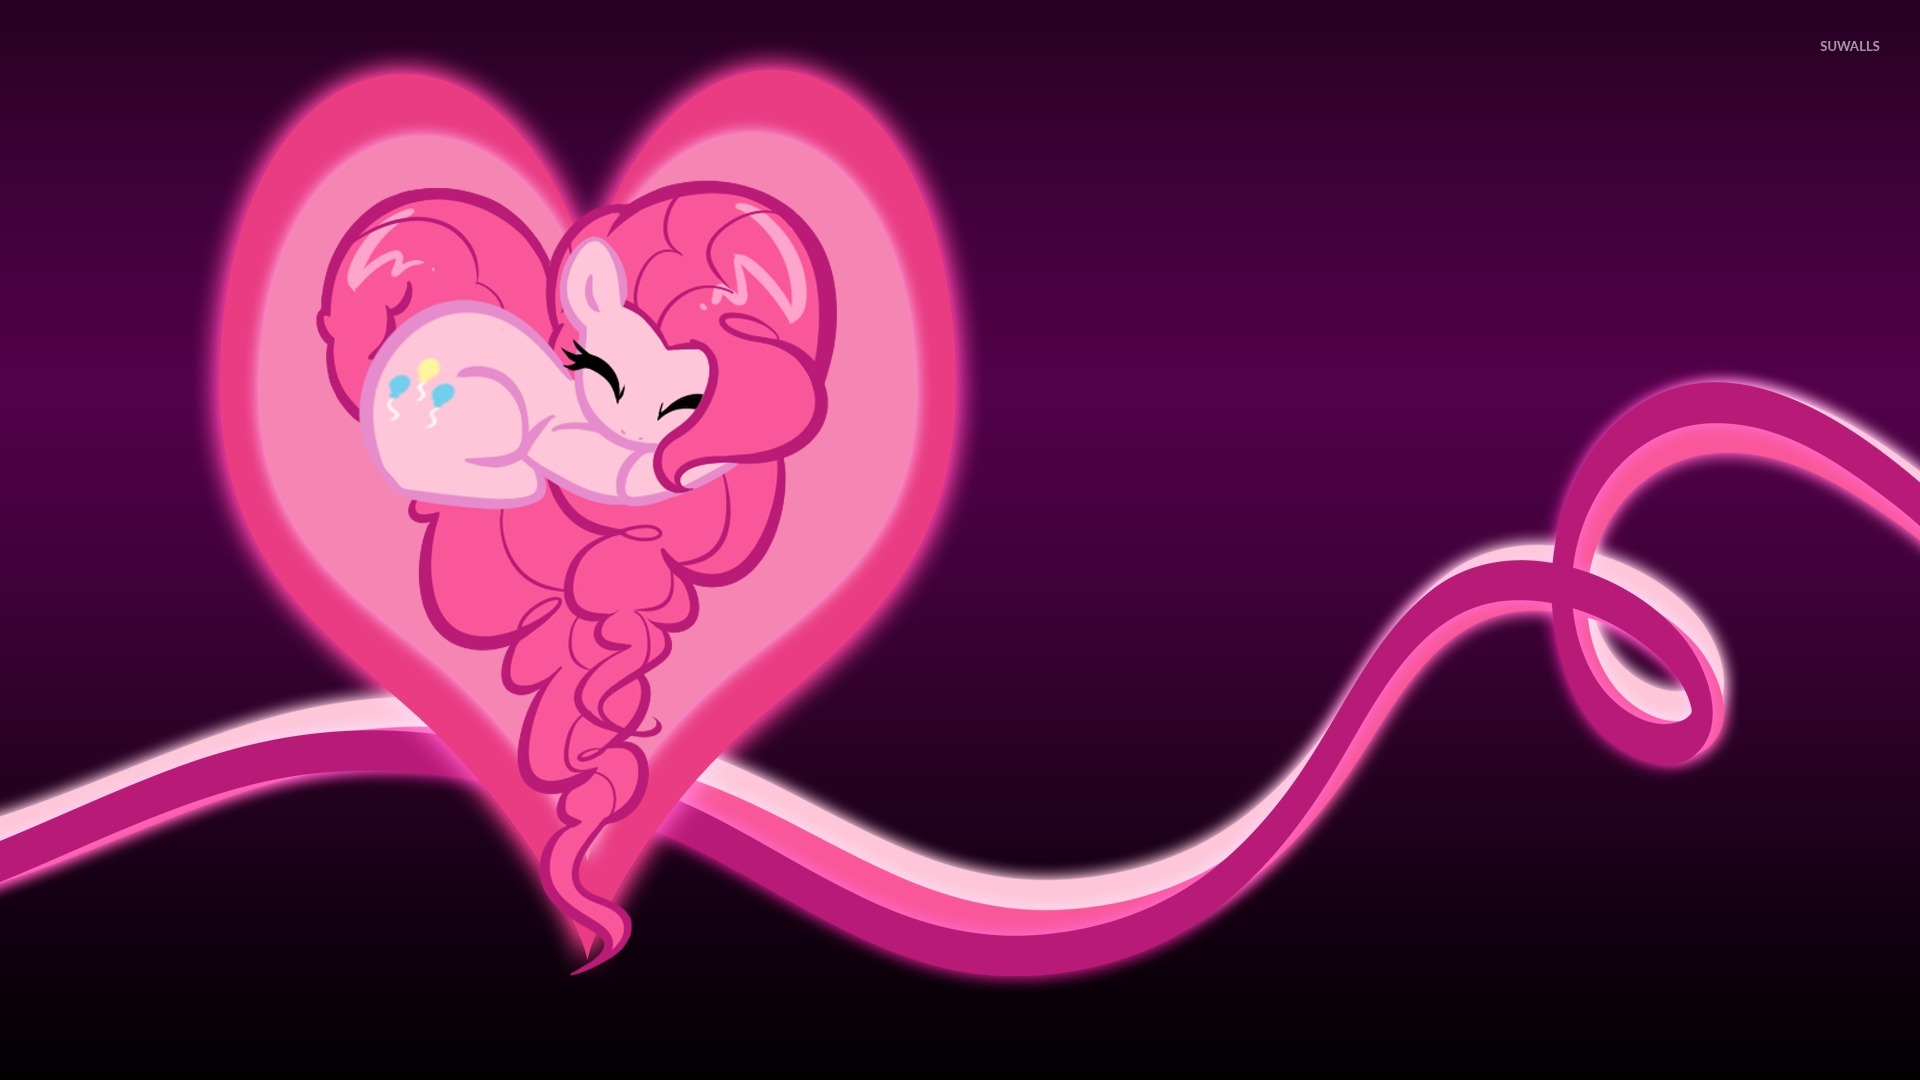 Pinkie Pie In A Glowing Heart My Little Pony Wallpaper Cartoon